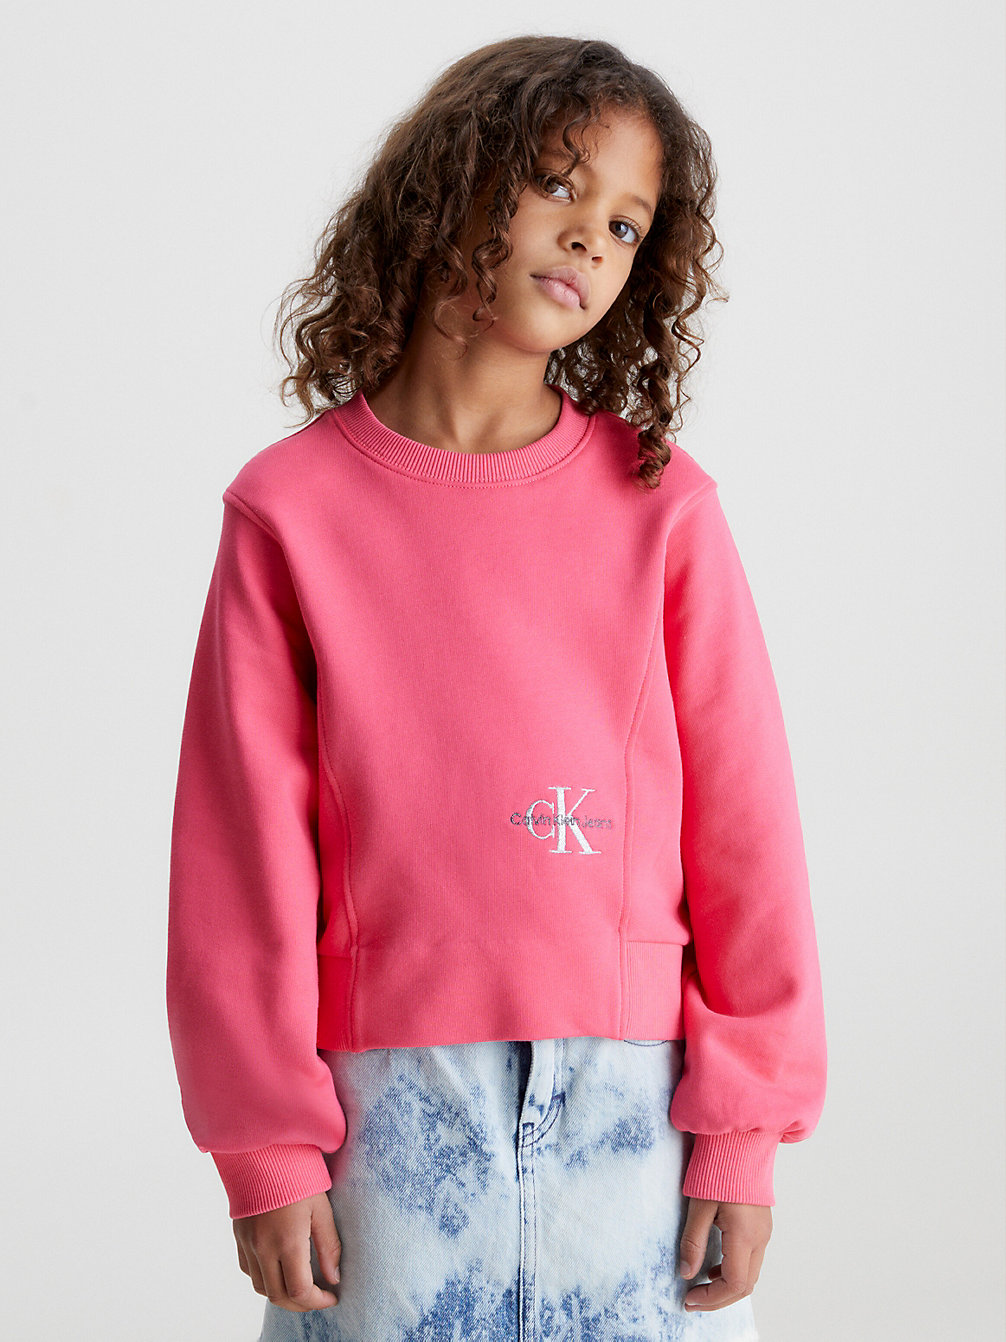 PINK FLASH Logo Sweatshirt undefined girls Calvin Klein